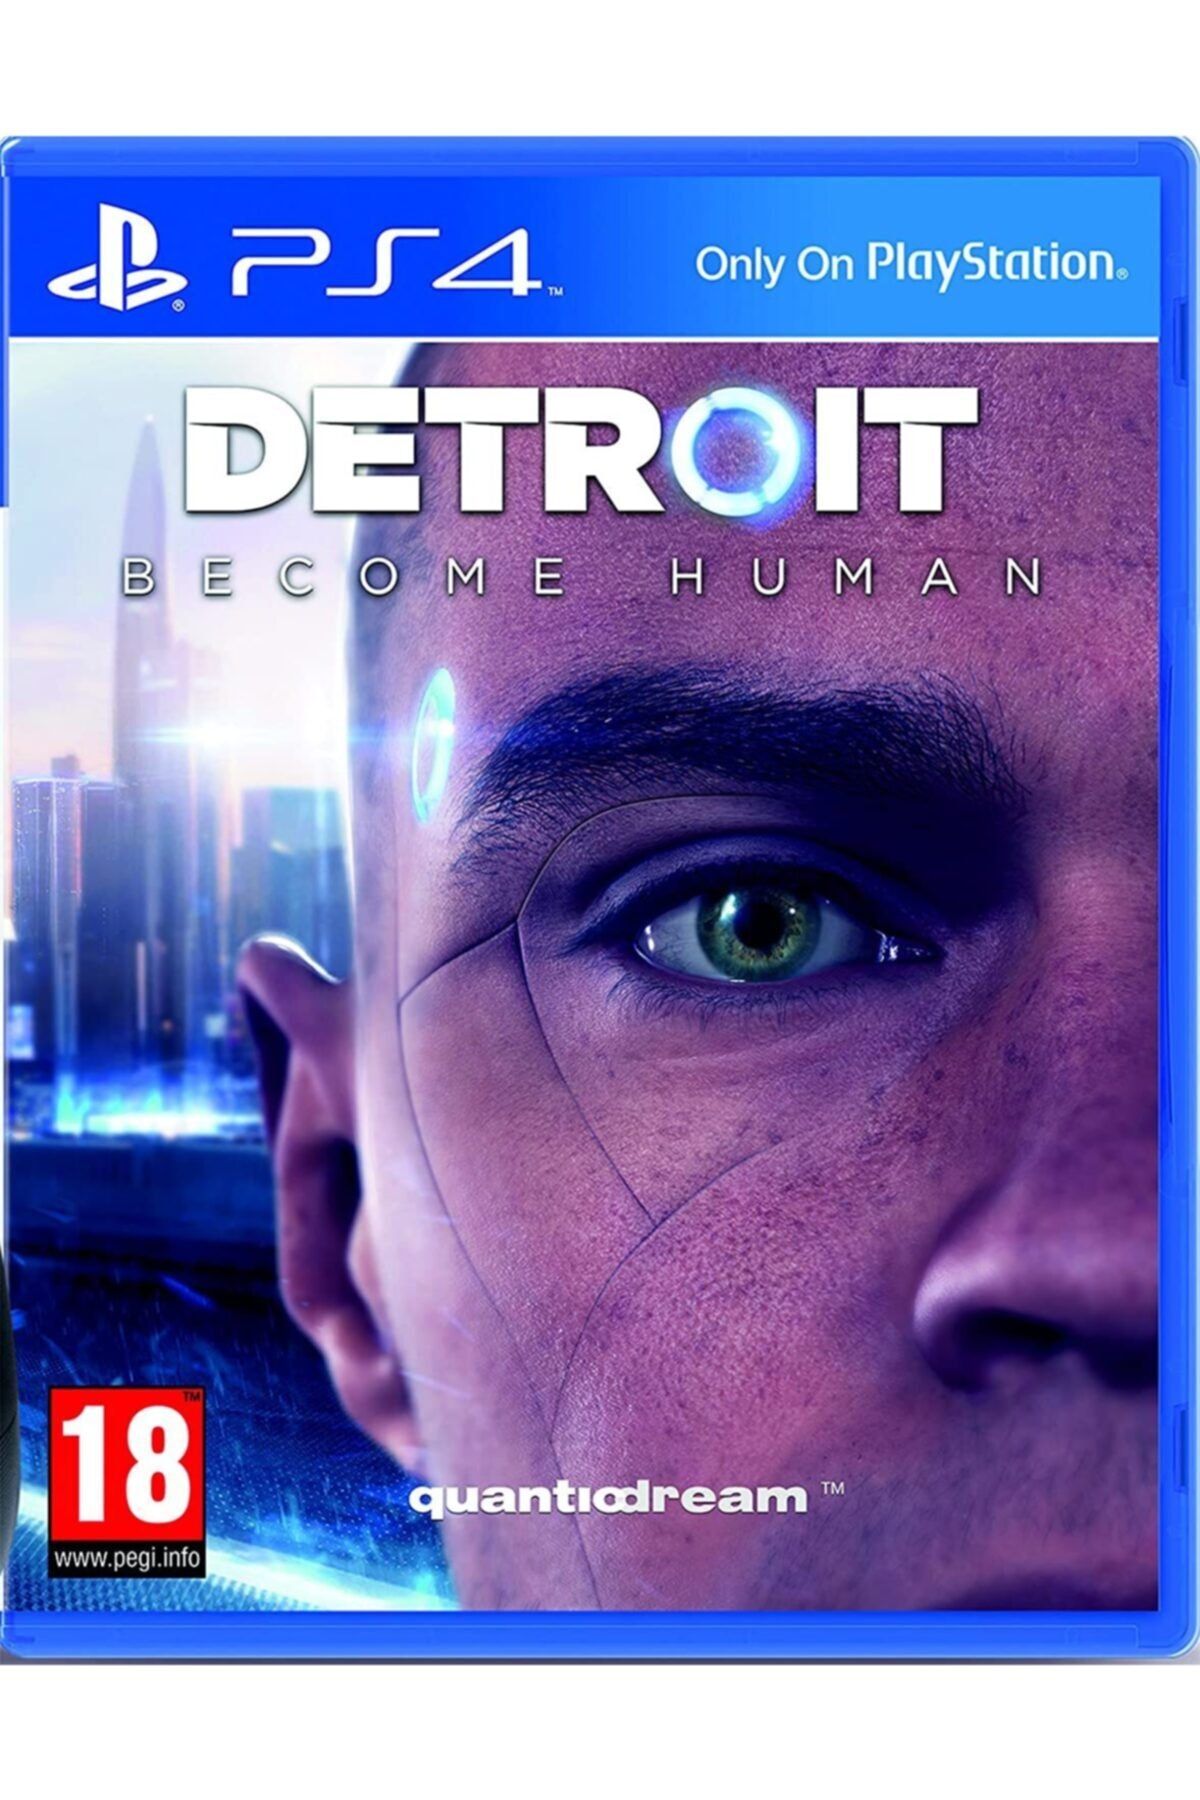 Quantiodream Detroit - Become Human